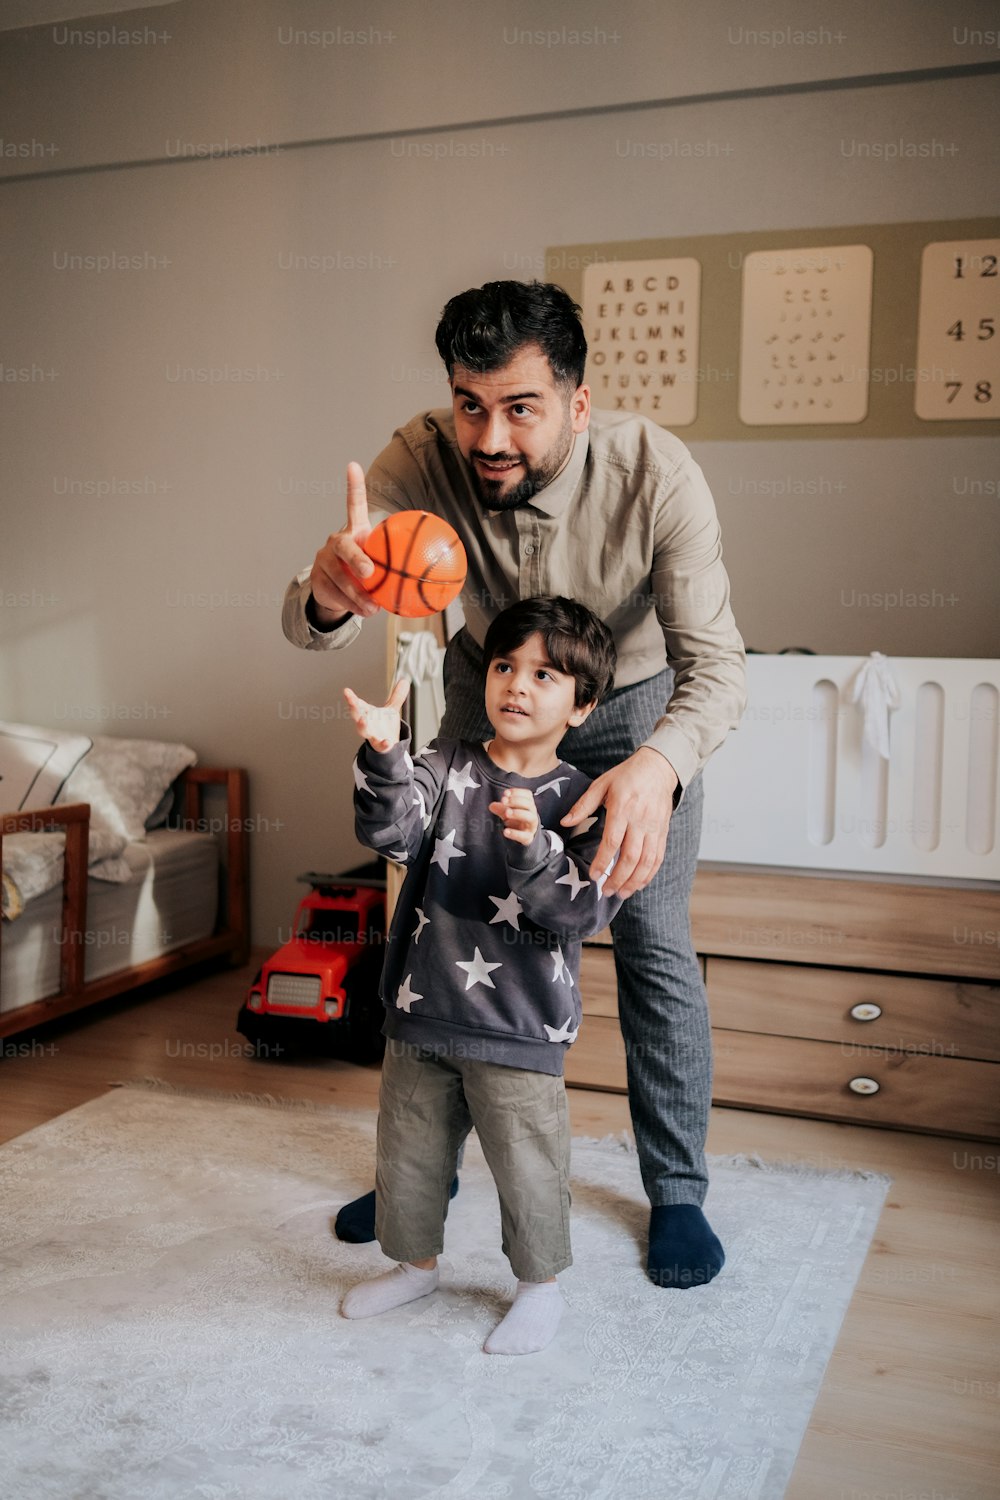 Un homme tenant un ballon de basket debout à côté d’un petit garçon